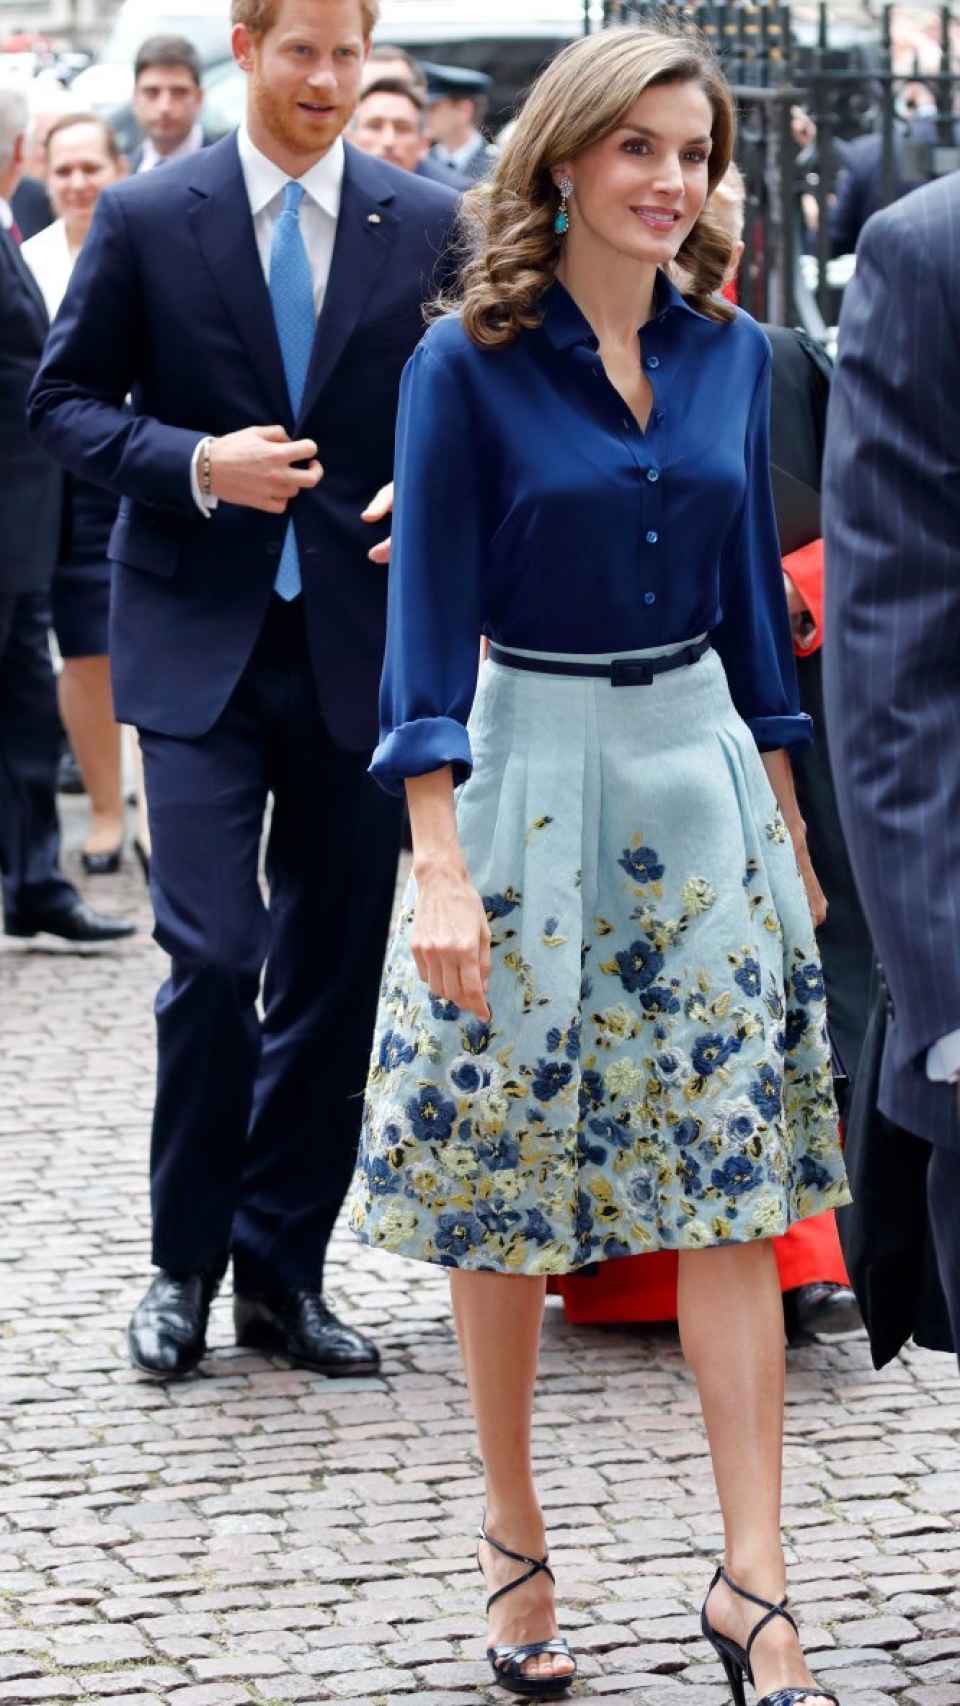 La reina Letizia y el príncipe Harry de Inglaterra en la Abadía de Westminster.